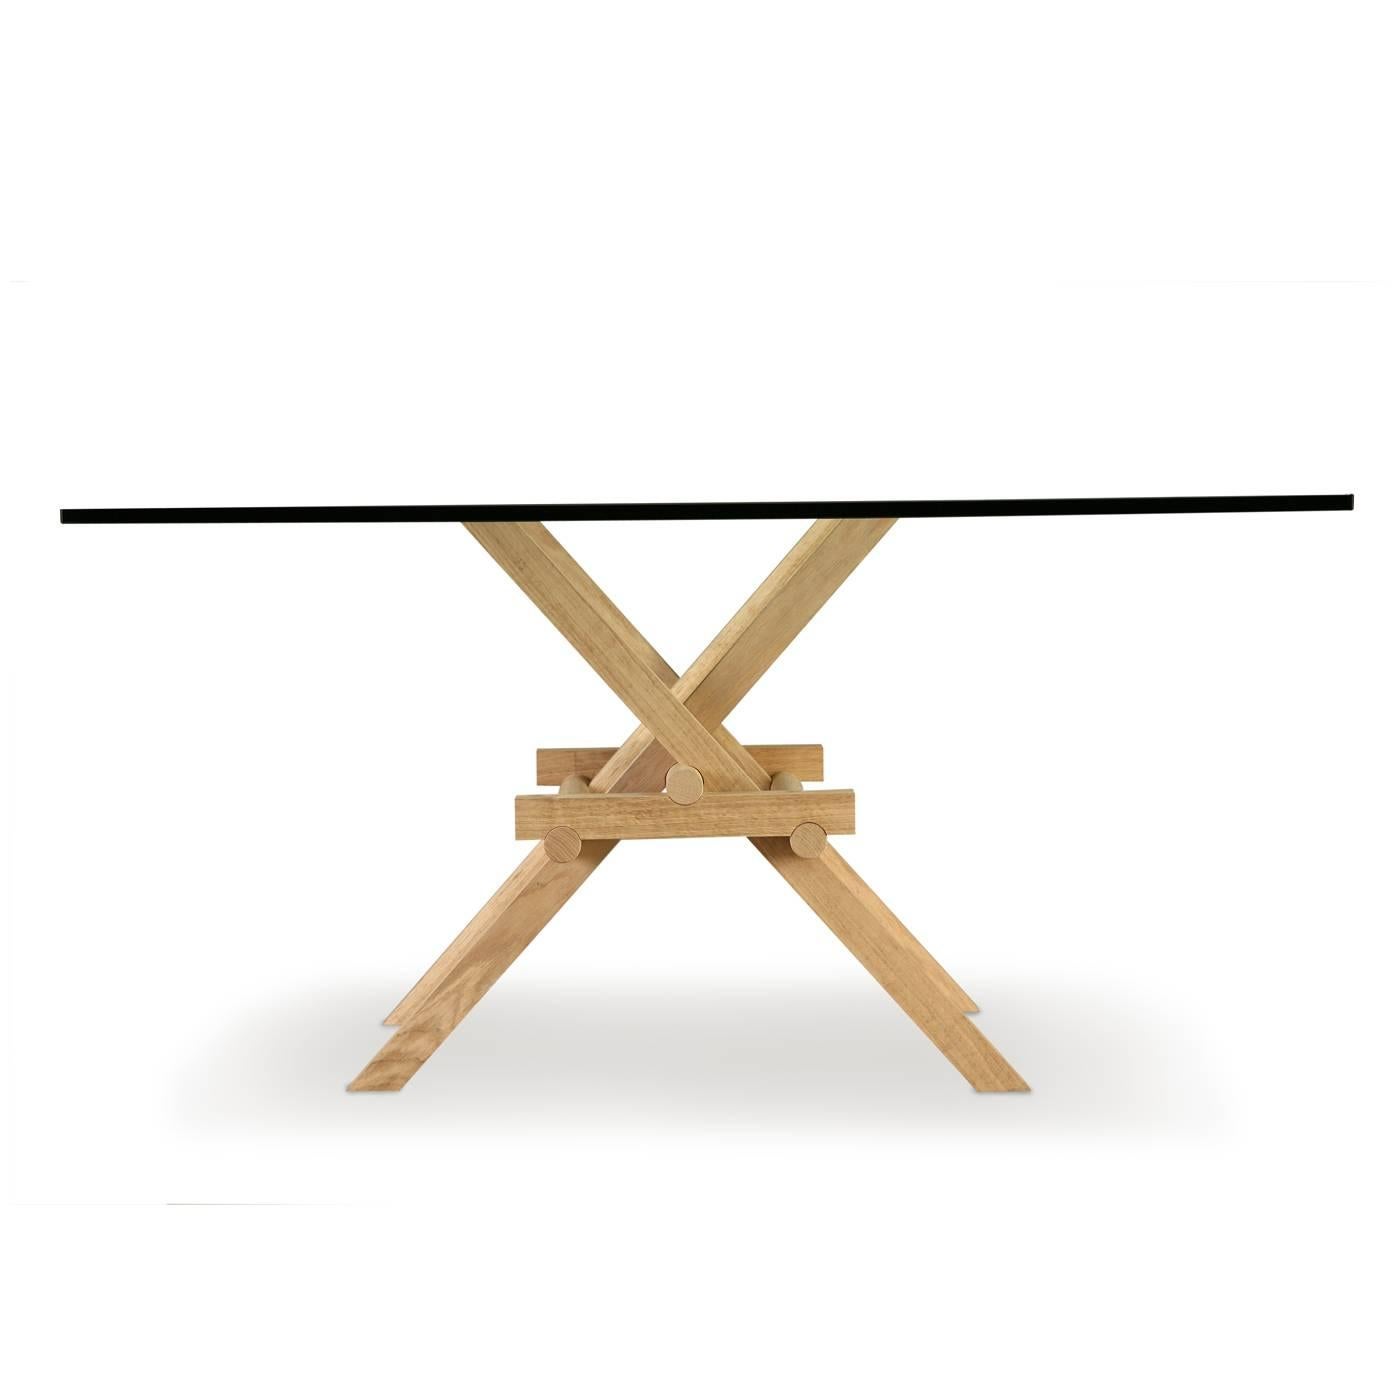 Marco Ferreri s'est inspiré des ponts mobiles de Léonard de Vinci pour concevoir cette table à manger qui comporte un système de pieds en bois de frêne massif reliés par une combinaison habile de joints, ce qui lui confère la solidité nécessaire